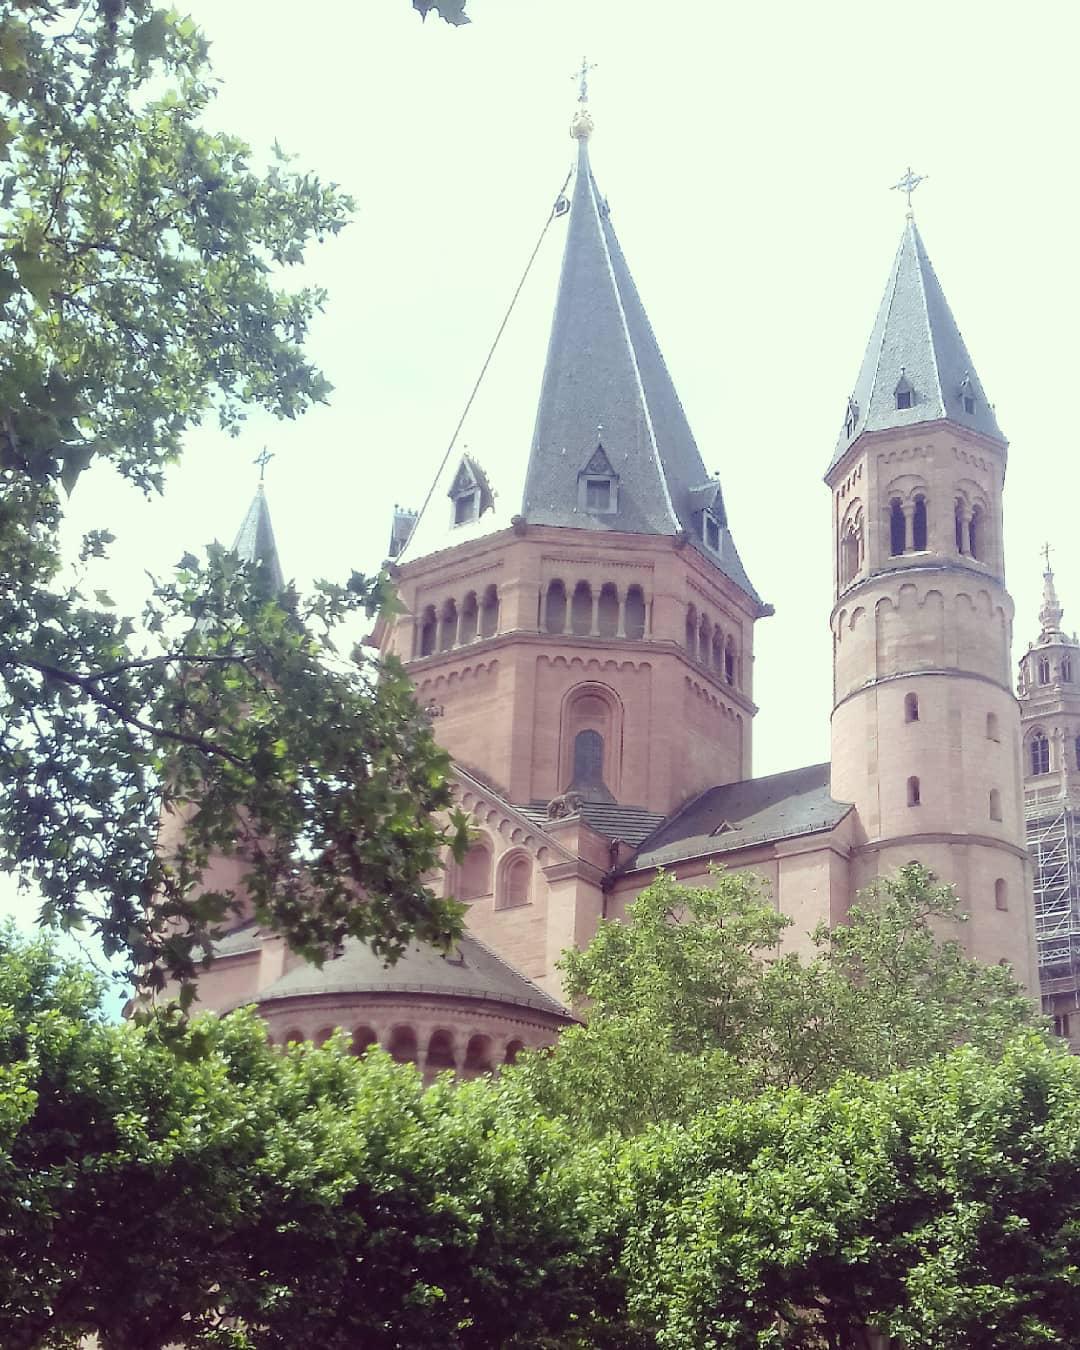 莱茵河地区最漂亮的教堂---美因茨Mainz大教堂 【慕名欣赏最漂亮的教堂】 来到欧洲怎么能不看一次